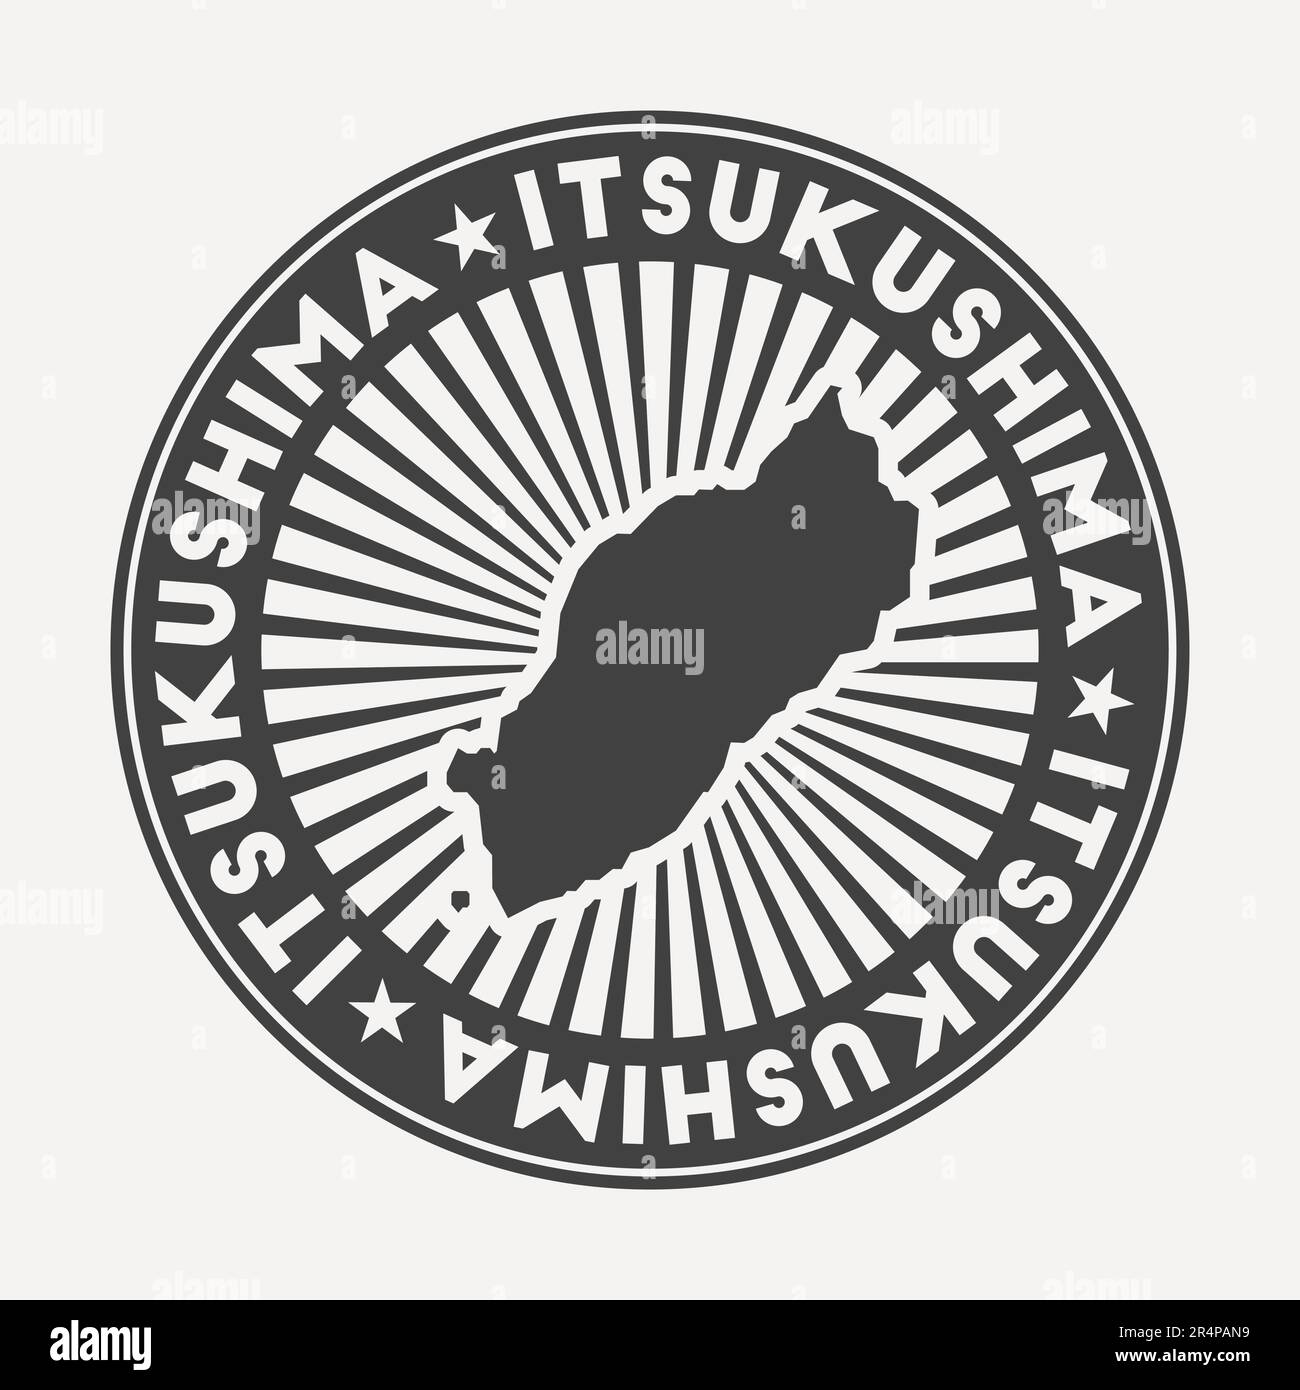 Logo Itsukushima rotondo. Badge da viaggio vintage con il nome circolare e la mappa dell'isola, illustrazione vettoriale. Può essere usato come insegna, logotipo, etichetta, Illustrazione Vettoriale